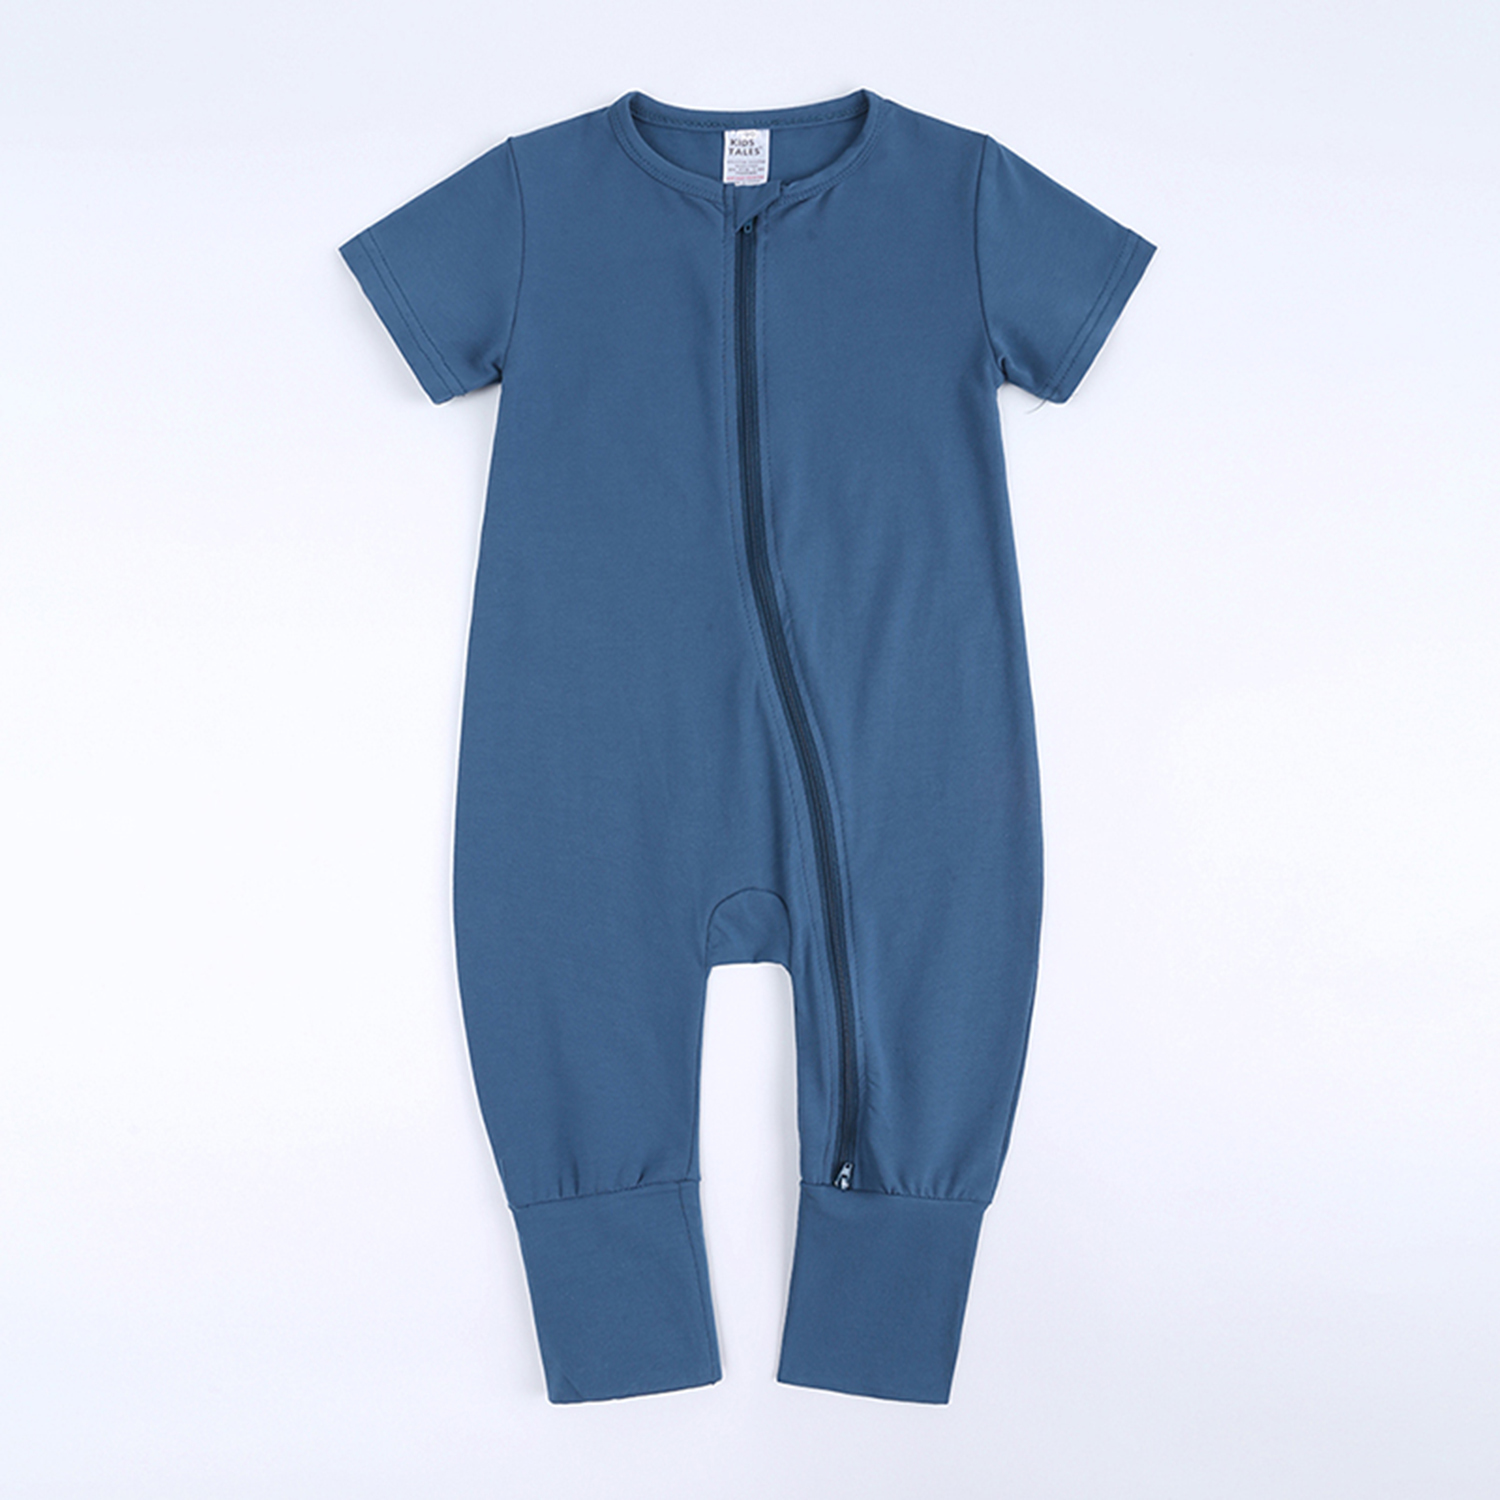 BEST BABY ROMPER BLUE 12-18 Mo Cotton Double Zipper Infant Bodysuit Sleeper Boy